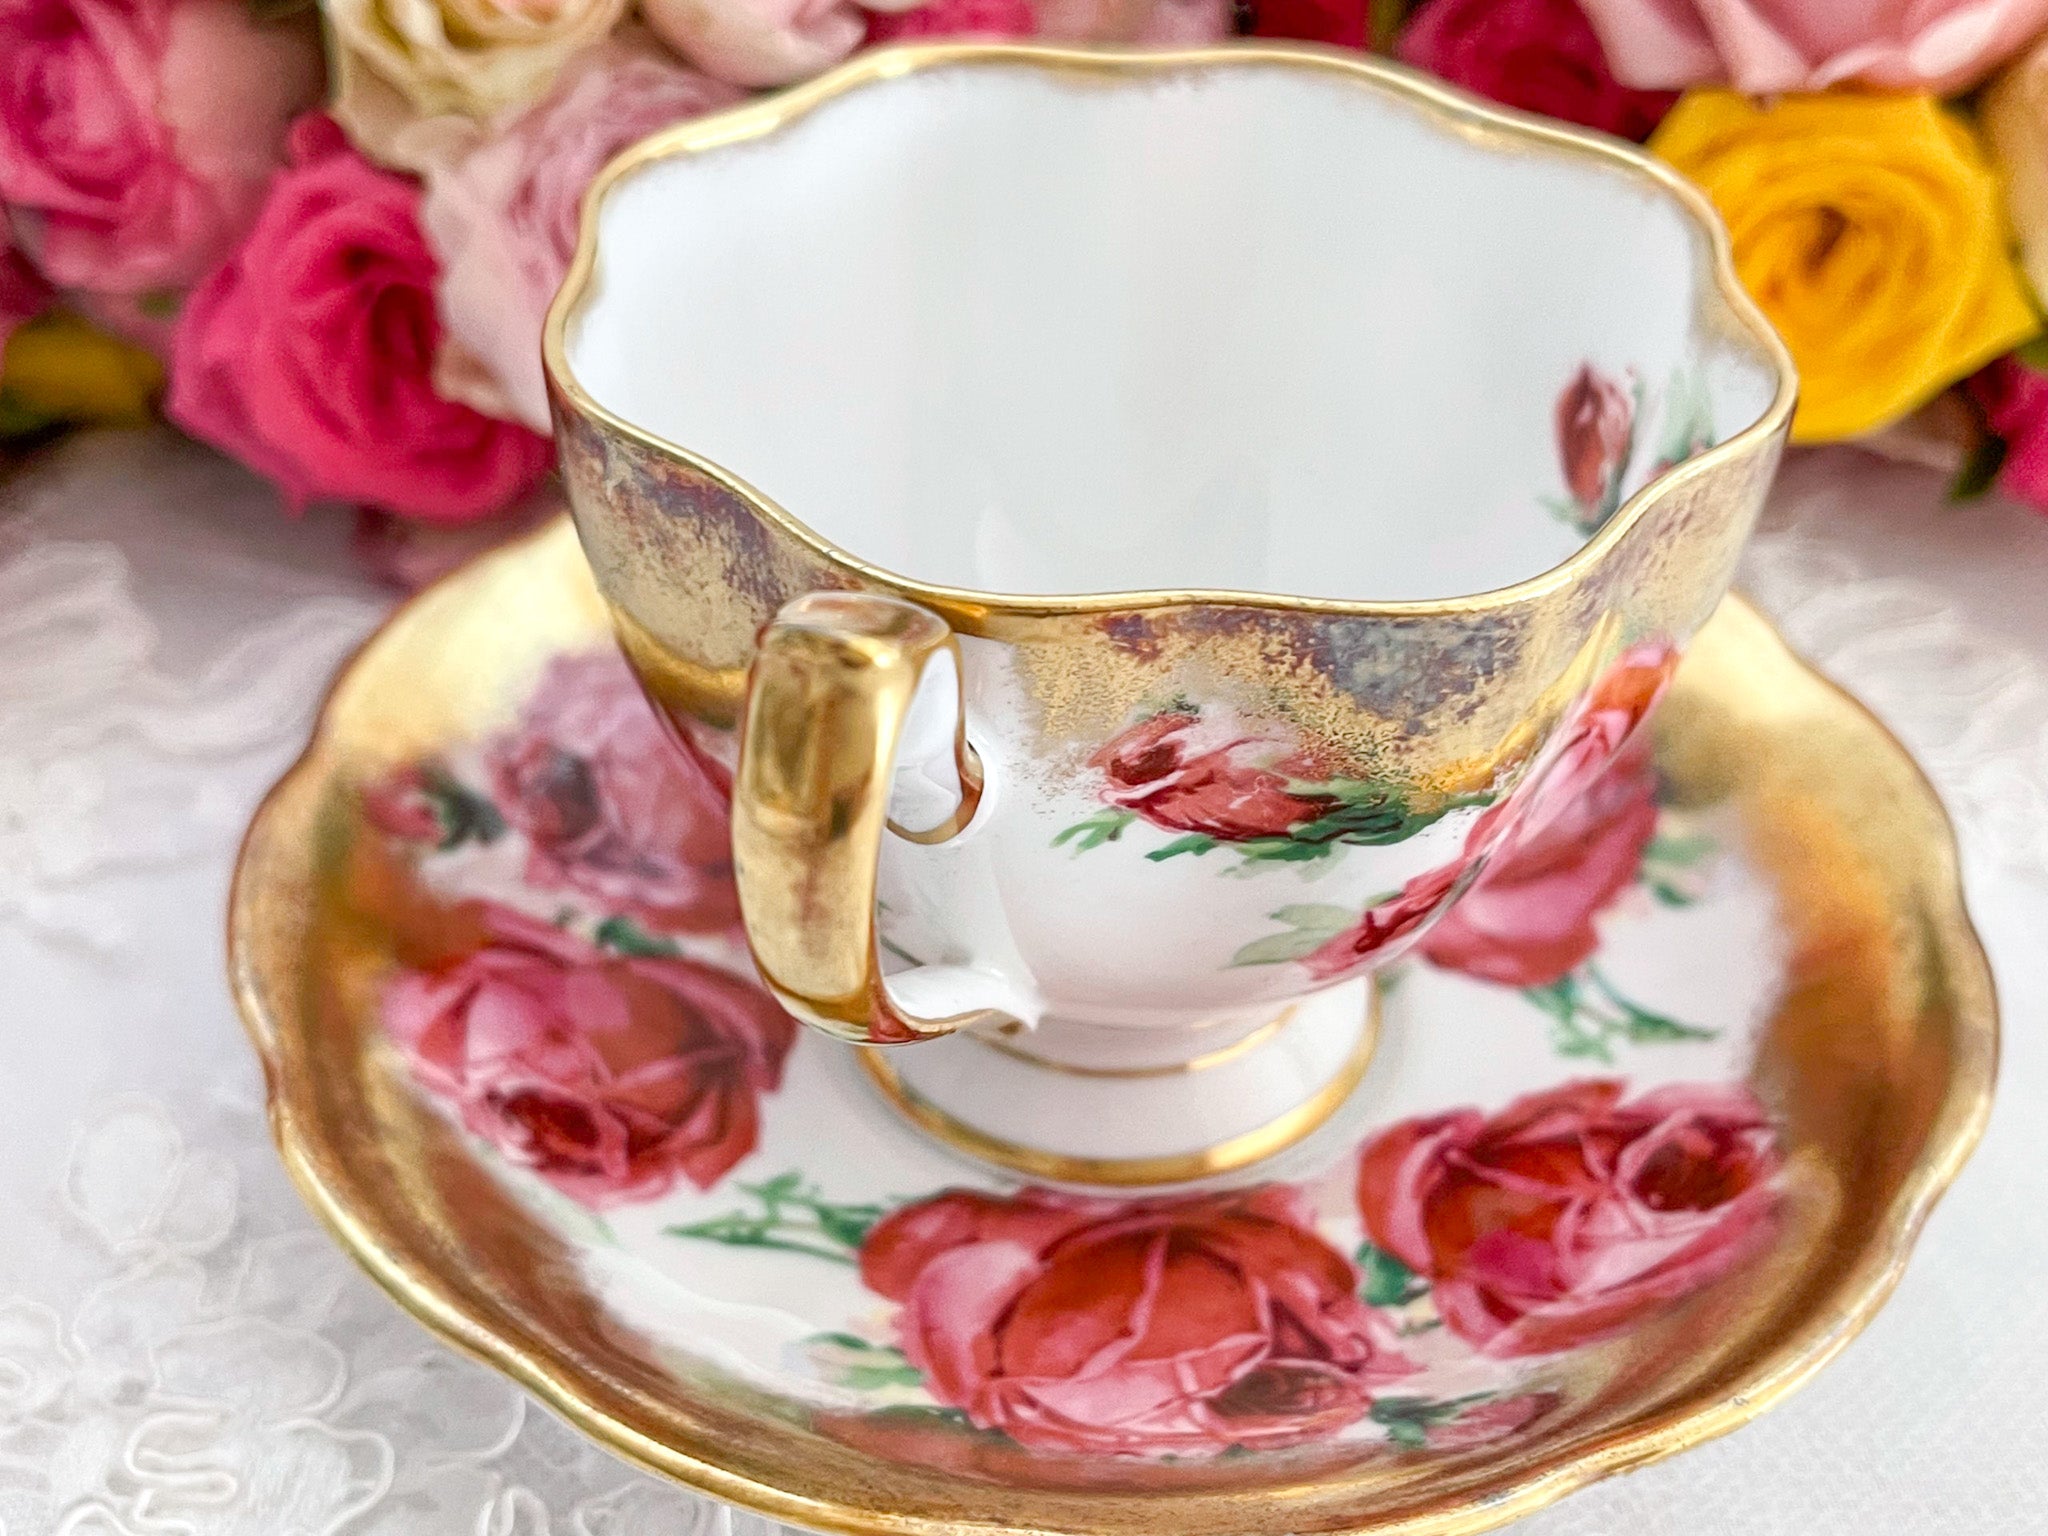 クイーンアン ピンクの大輪のバラと豪華な金彩のカップ&ソーサー 